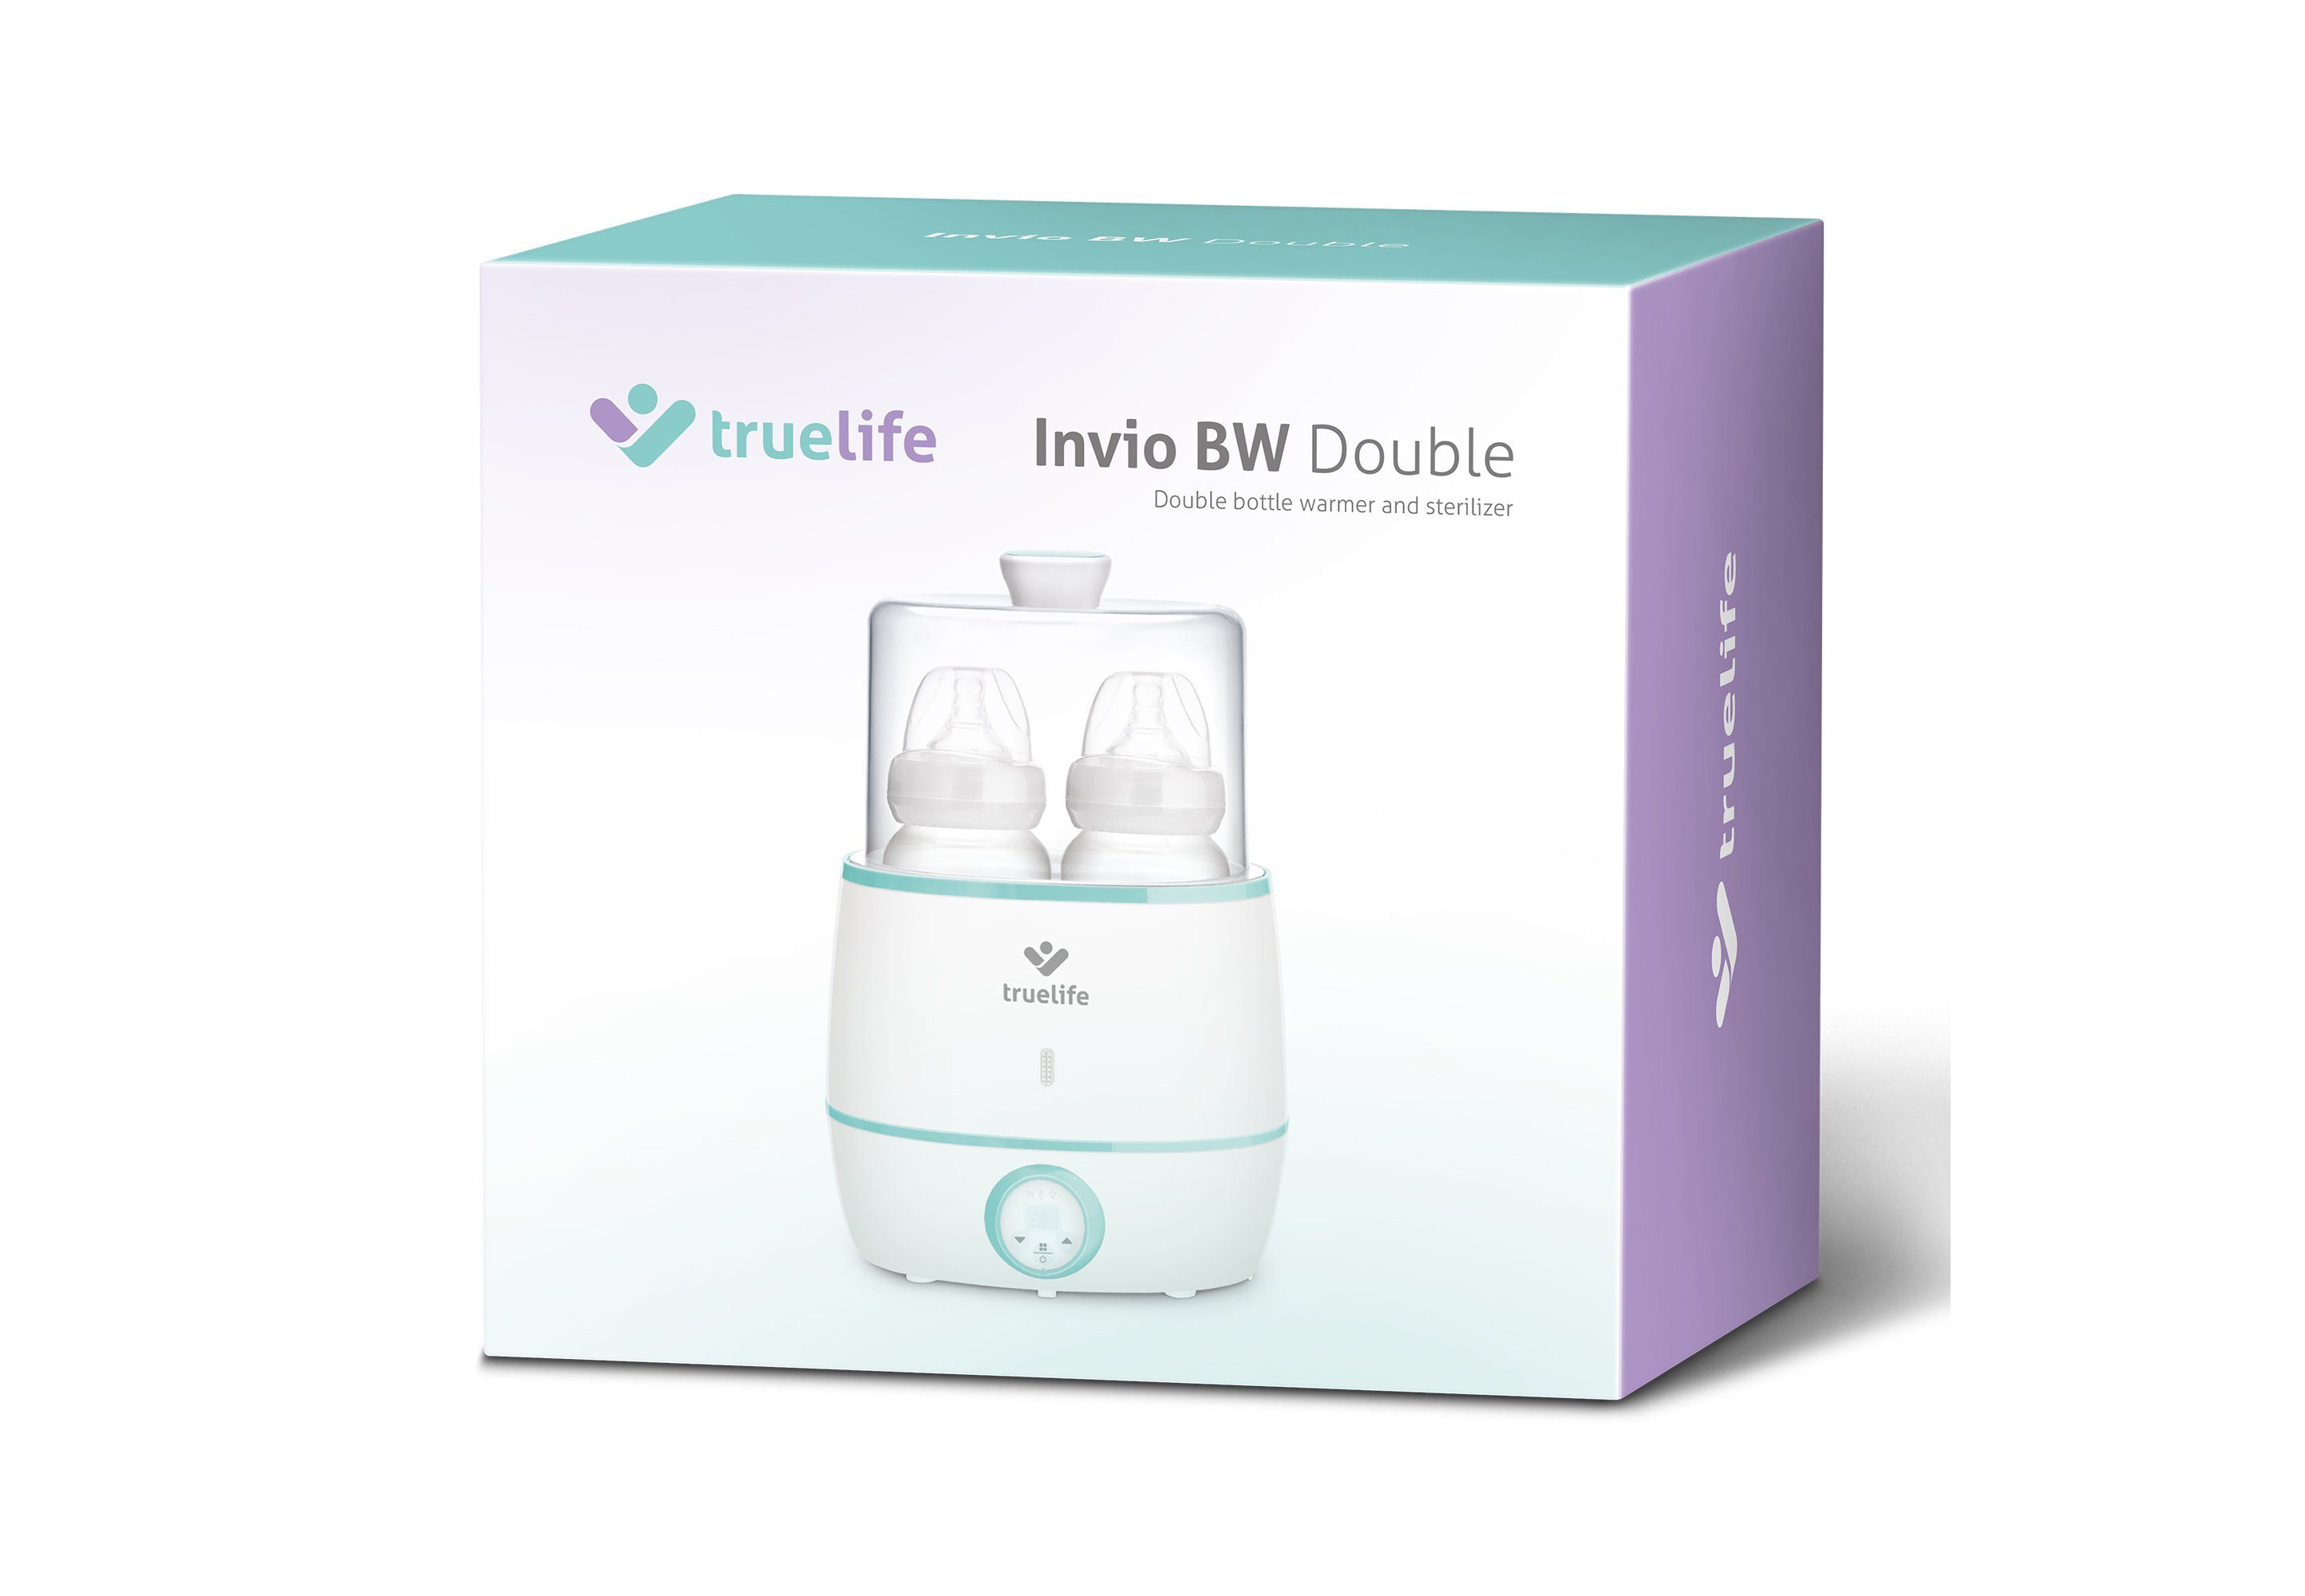 TrueLife Babyflaschenwärmer Invio BW Double, praktischem Sterilisator mit